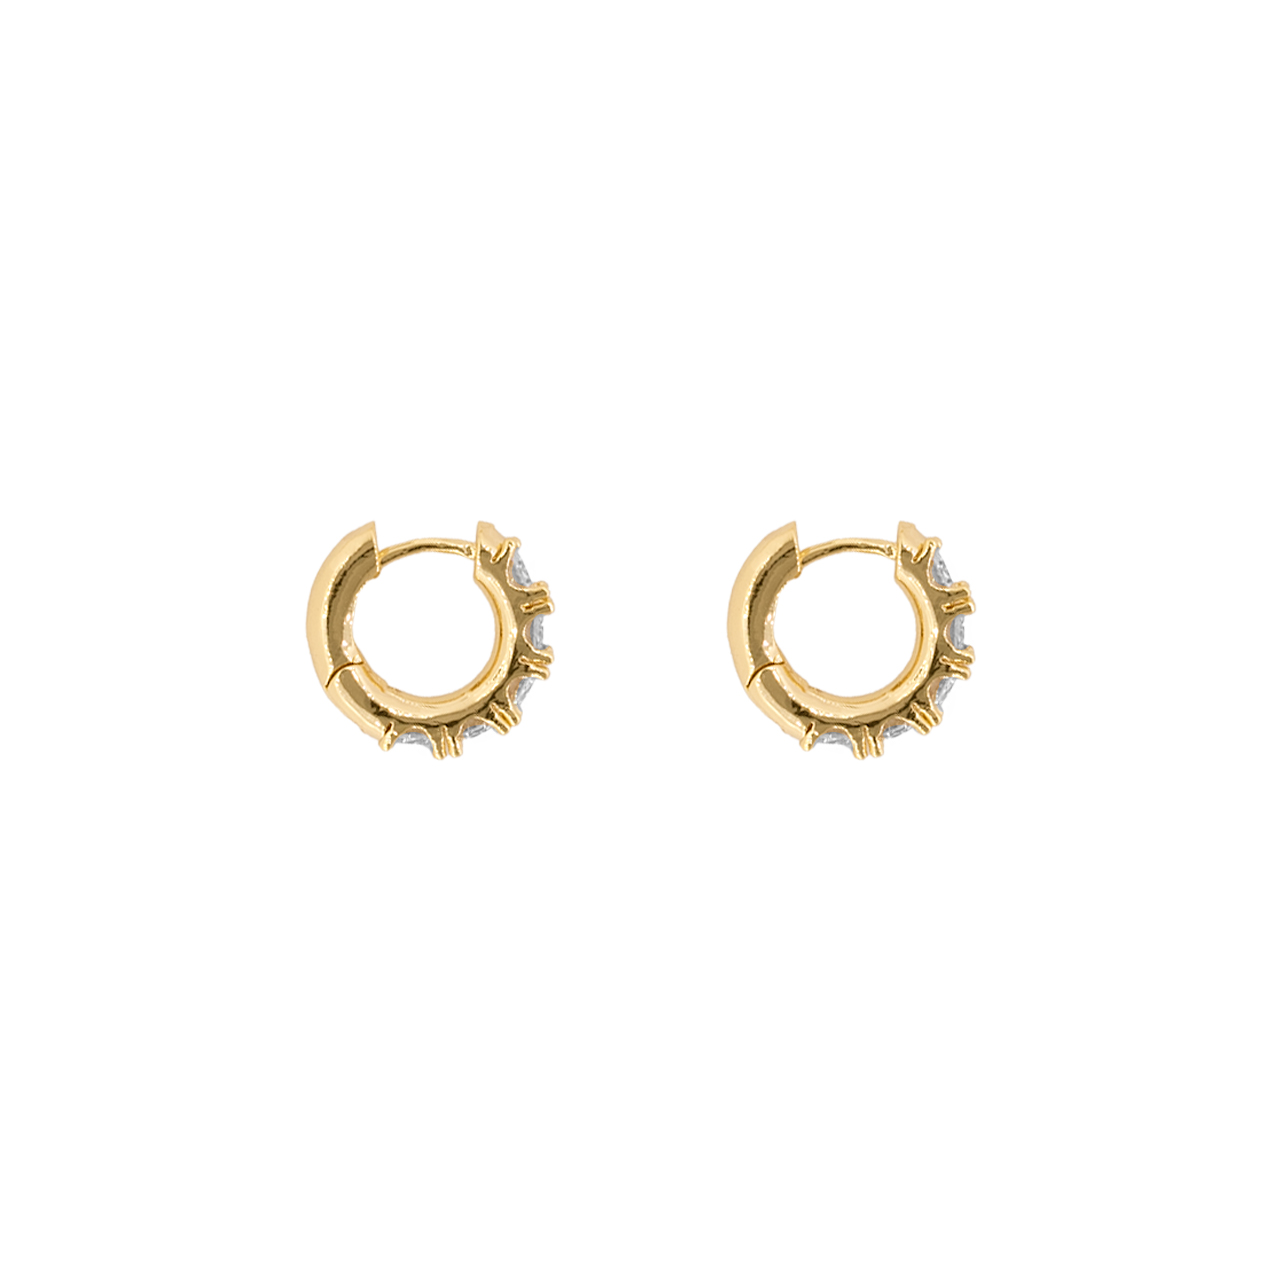 Arete de bronce con baño de oro 24k- Jewelry- Joyeria- brand- ventas al mayor- exclusiviad- tendencia marca SODHANA